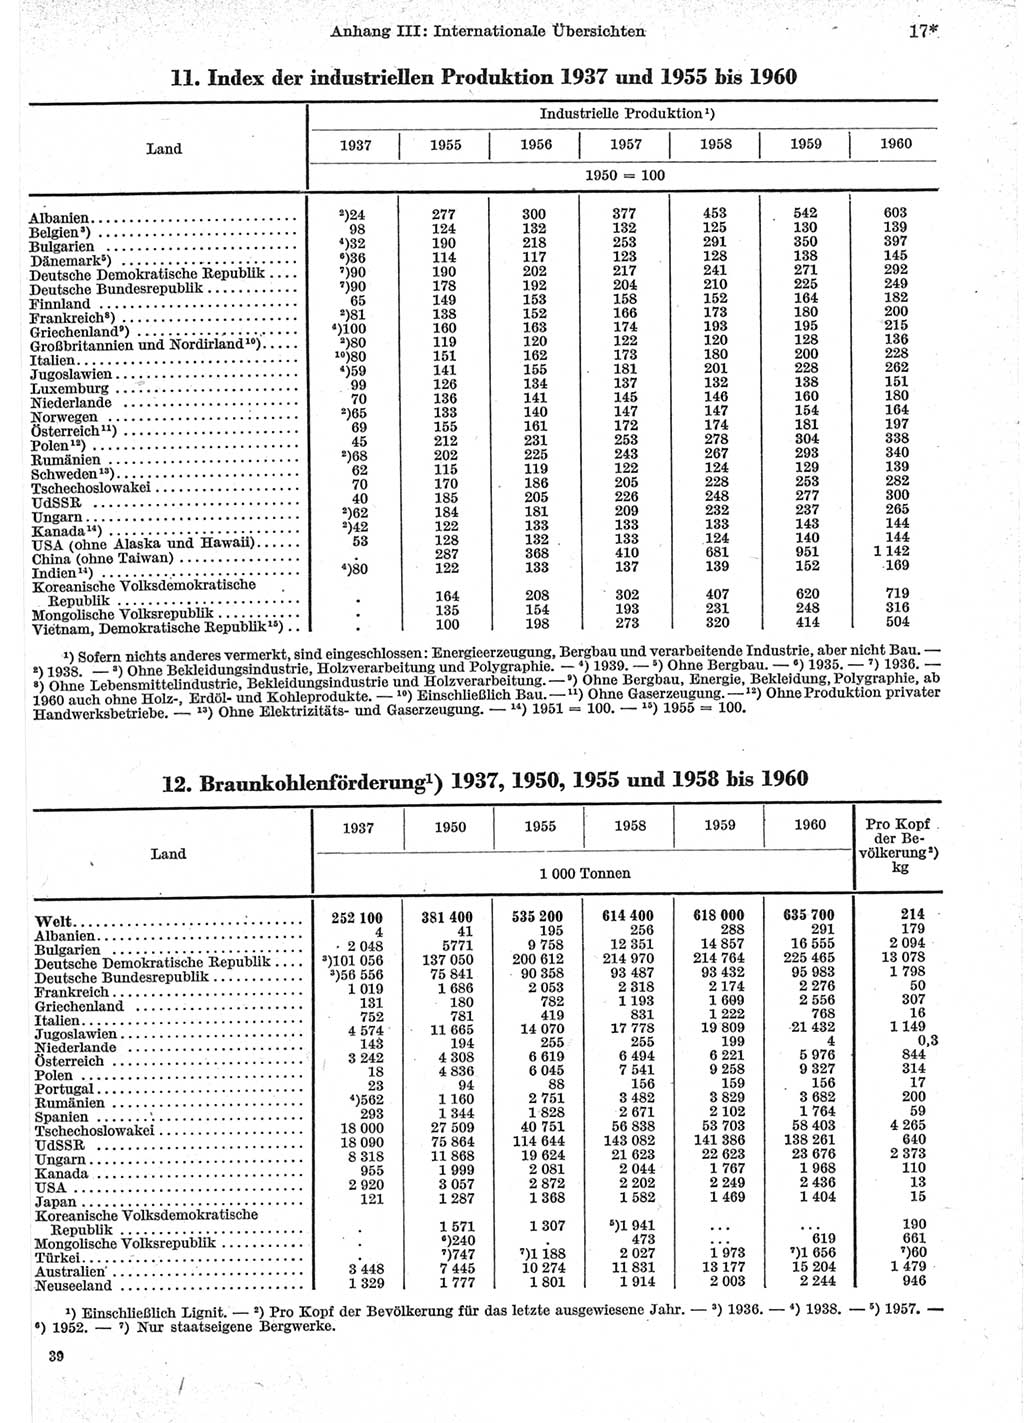 Statistisches Jahrbuch der Deutschen Demokratischen Republik (DDR) 1962, Seite 17 (Stat. Jb. DDR 1962, S. 17)